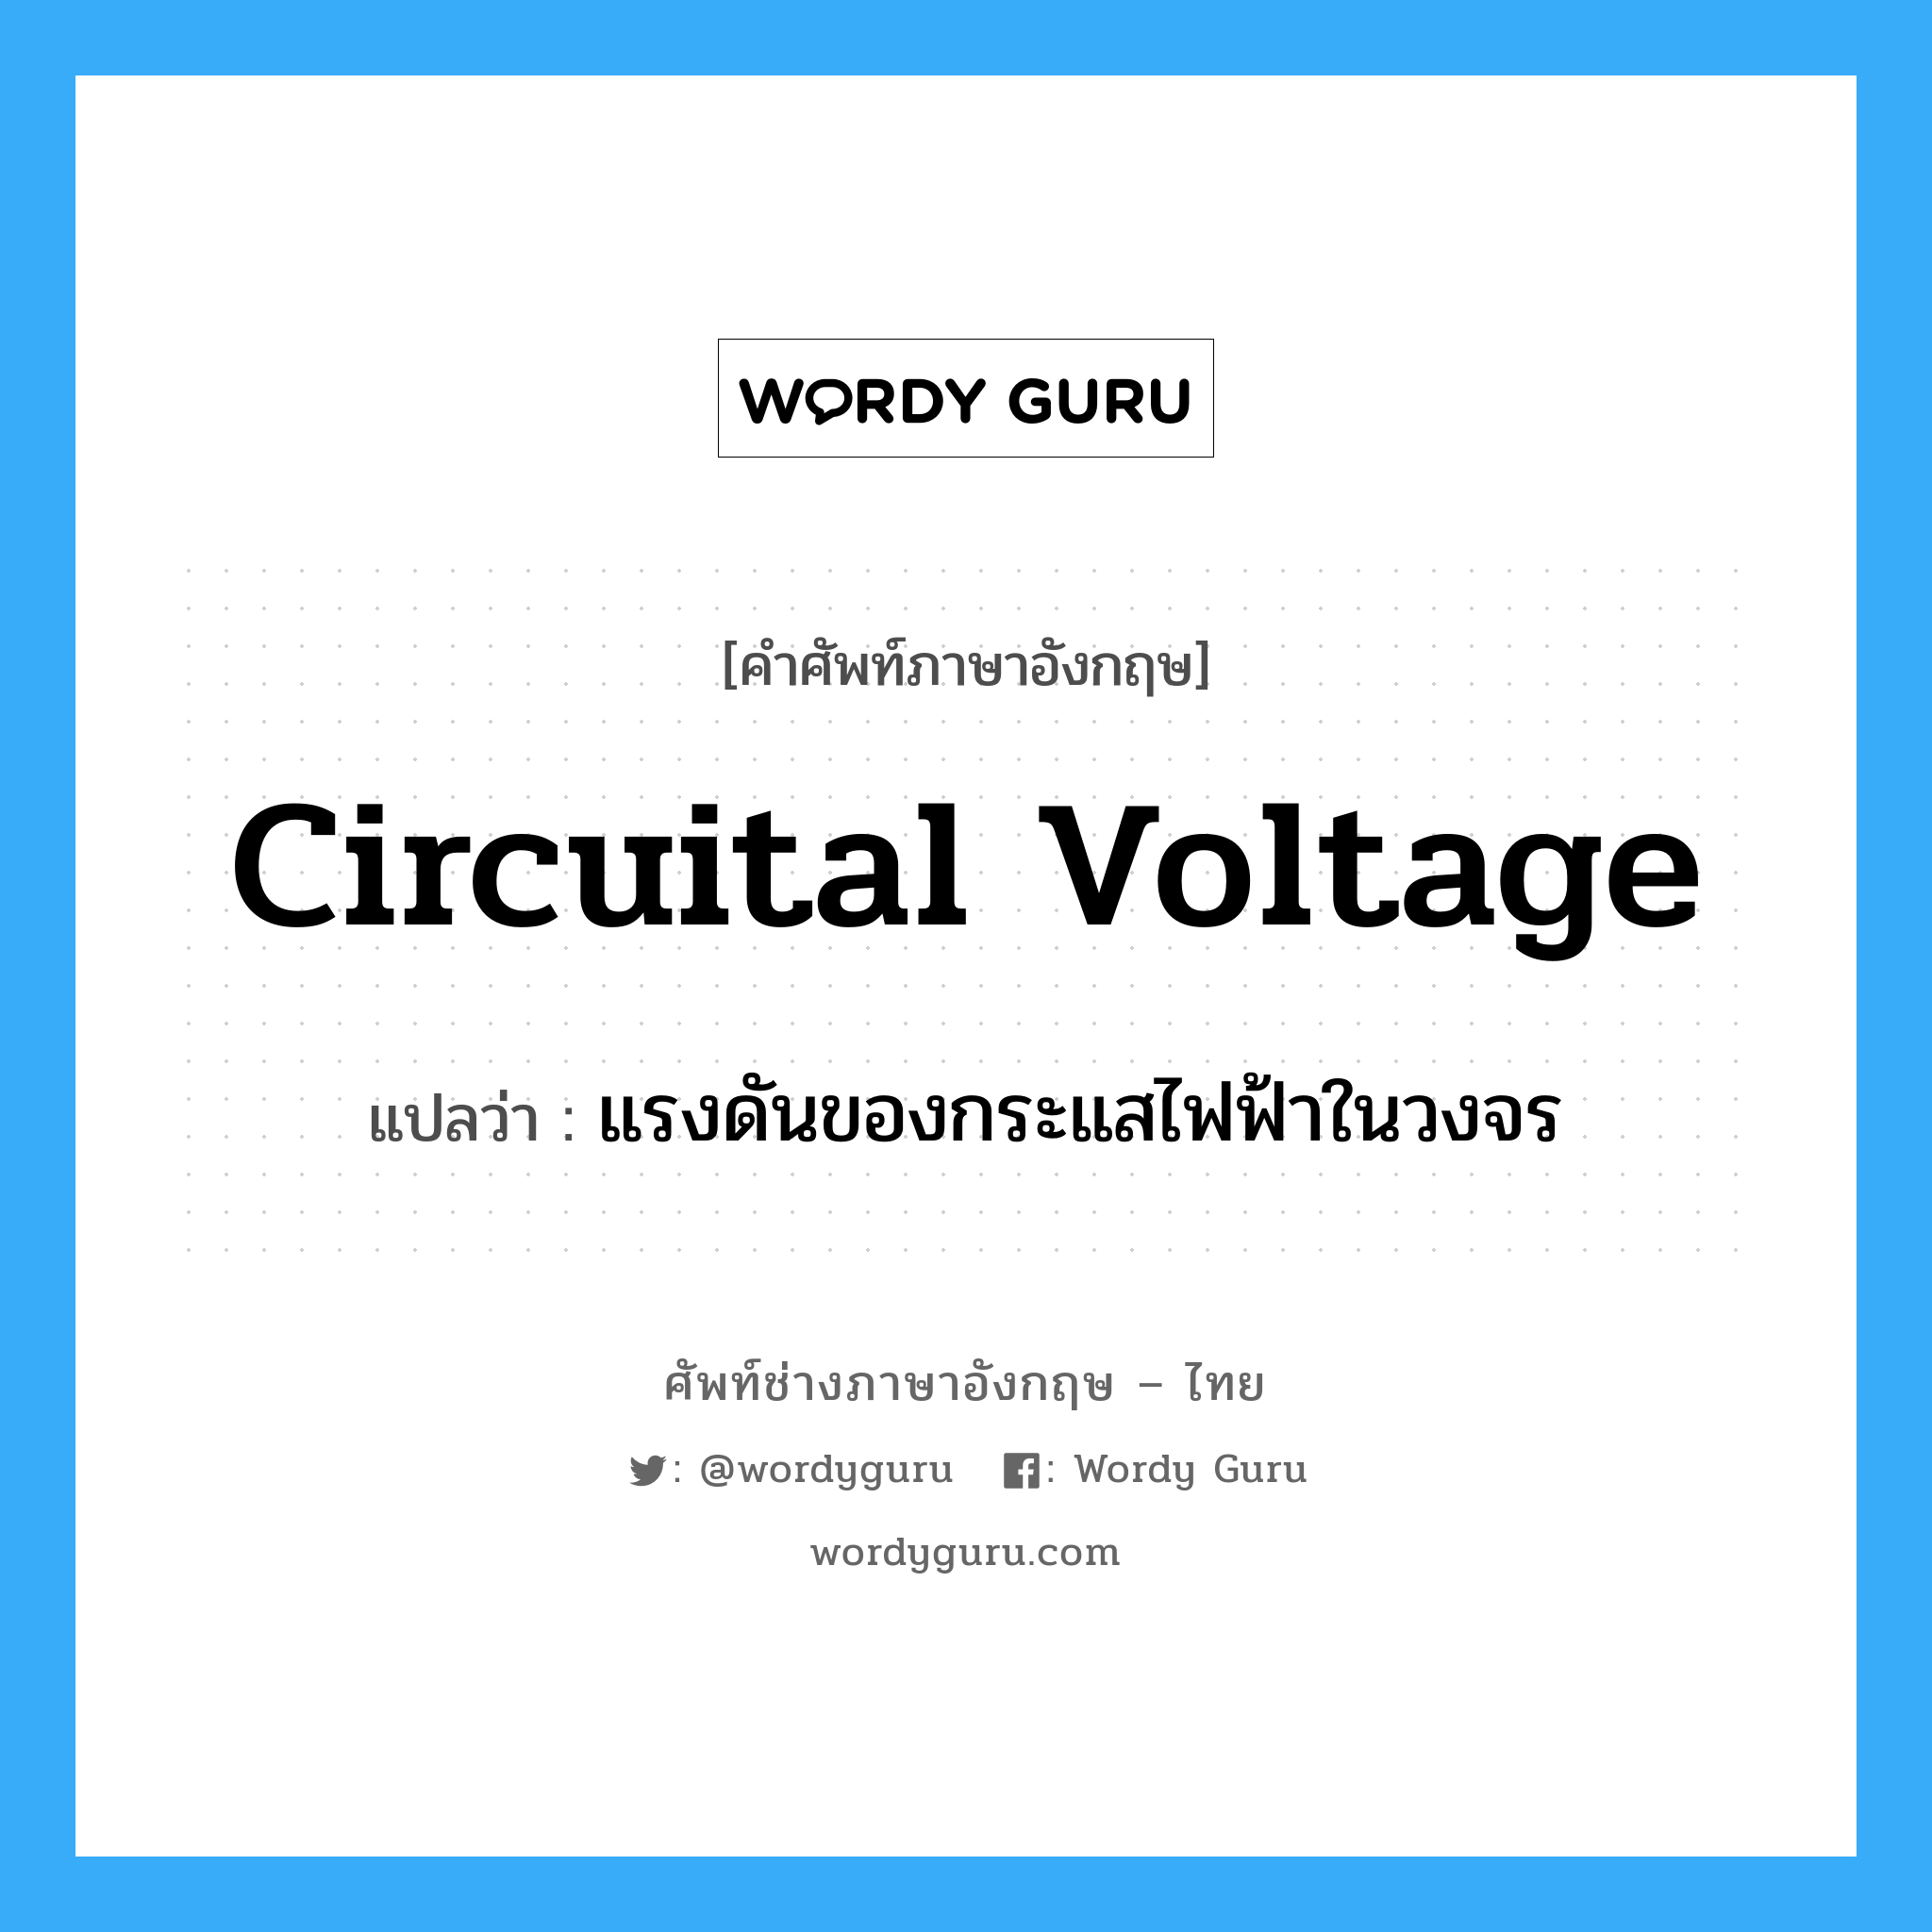 แรงดันของกระแสไฟฟ้าในวงจร ภาษาอังกฤษ?, คำศัพท์ช่างภาษาอังกฤษ - ไทย แรงดันของกระแสไฟฟ้าในวงจร คำศัพท์ภาษาอังกฤษ แรงดันของกระแสไฟฟ้าในวงจร แปลว่า circuital voltage